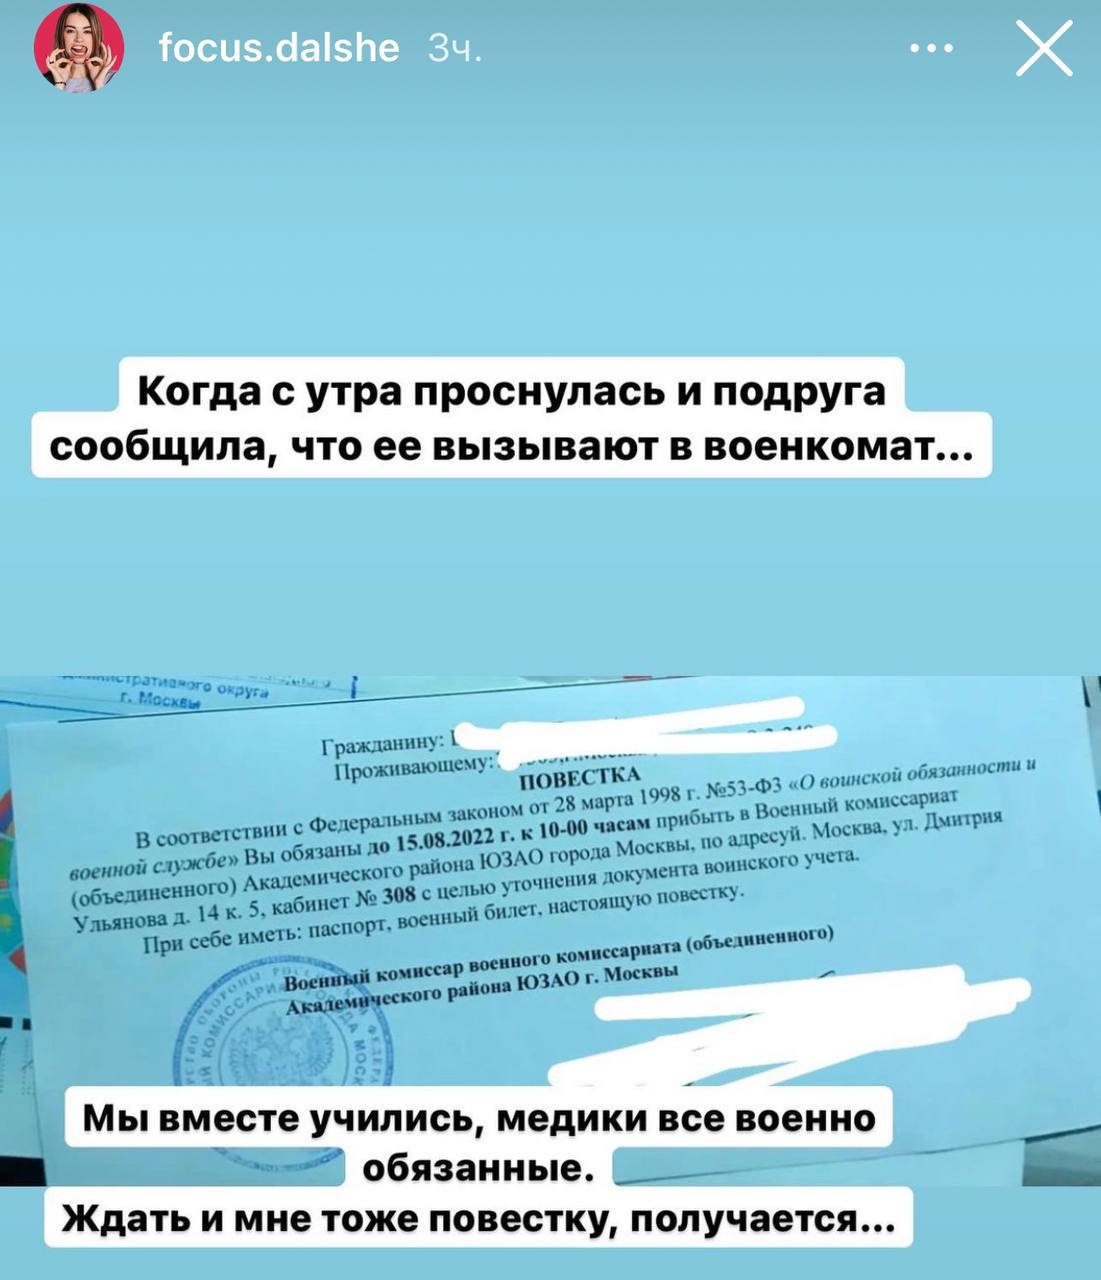 Москвичи сообщают, что медиков начали вызывать в военкомат для "уточнения документа воинского учёта"